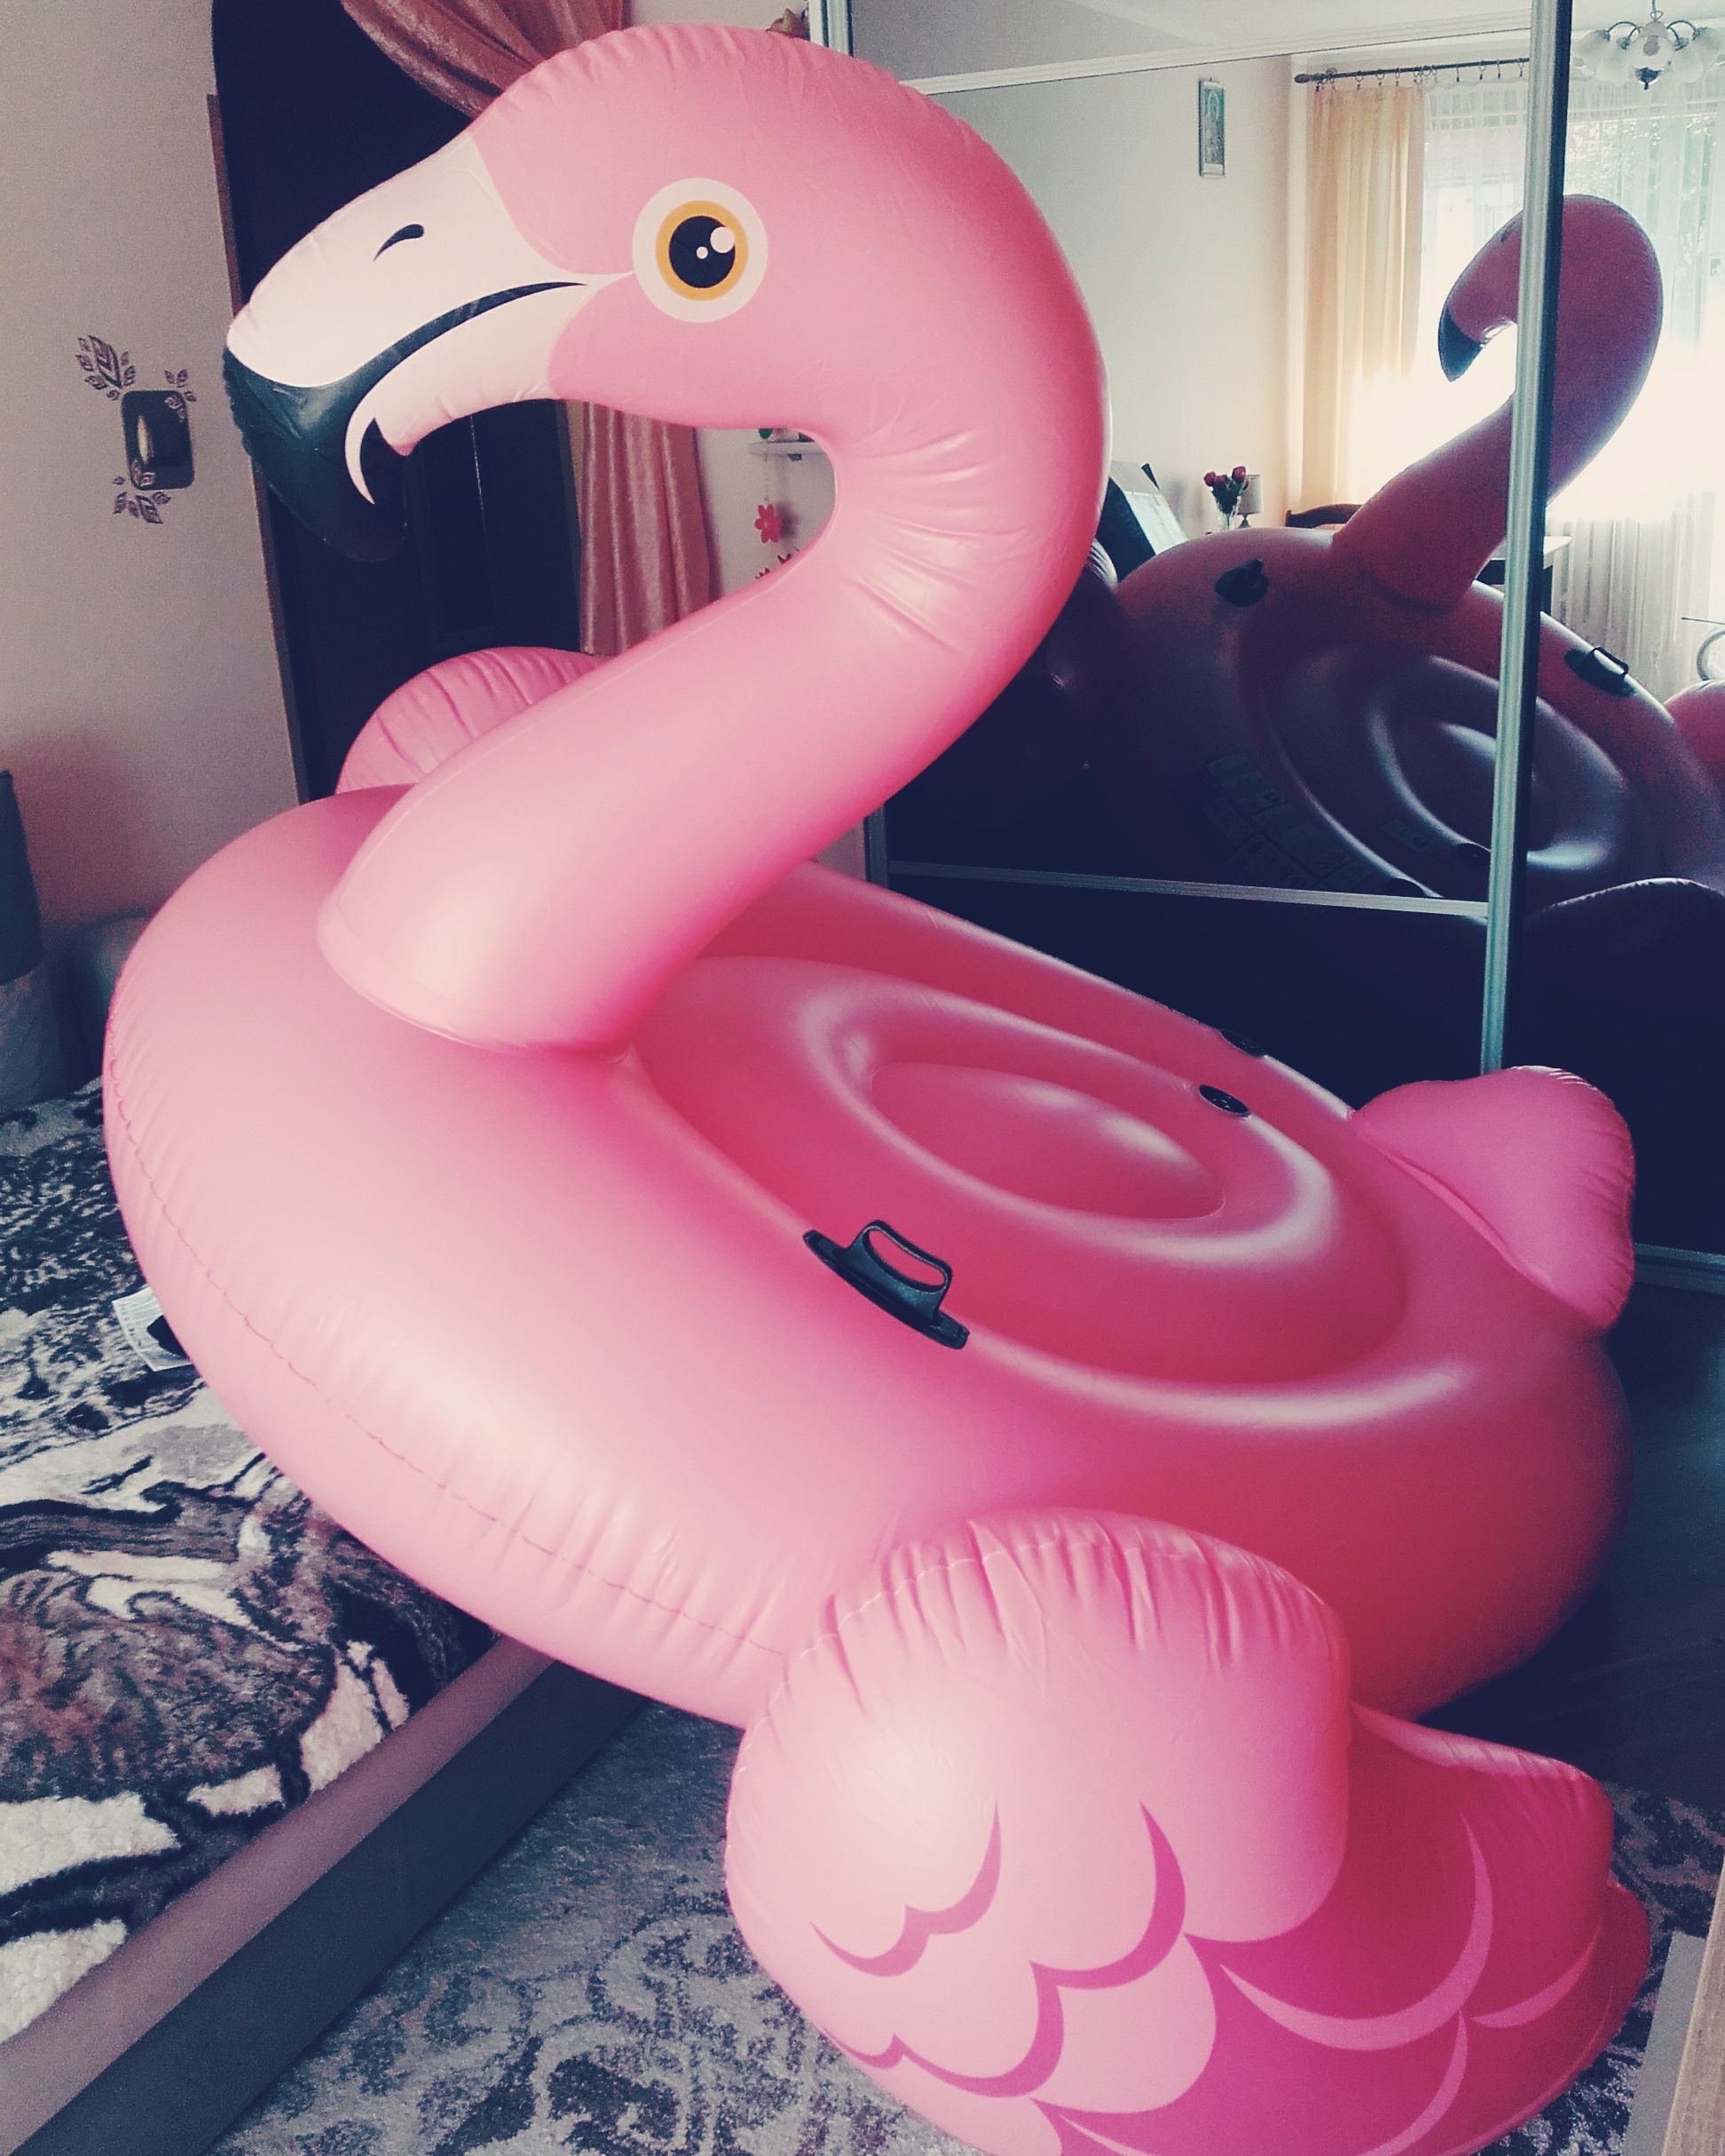 Dmuchane mega flamingi w biedro!